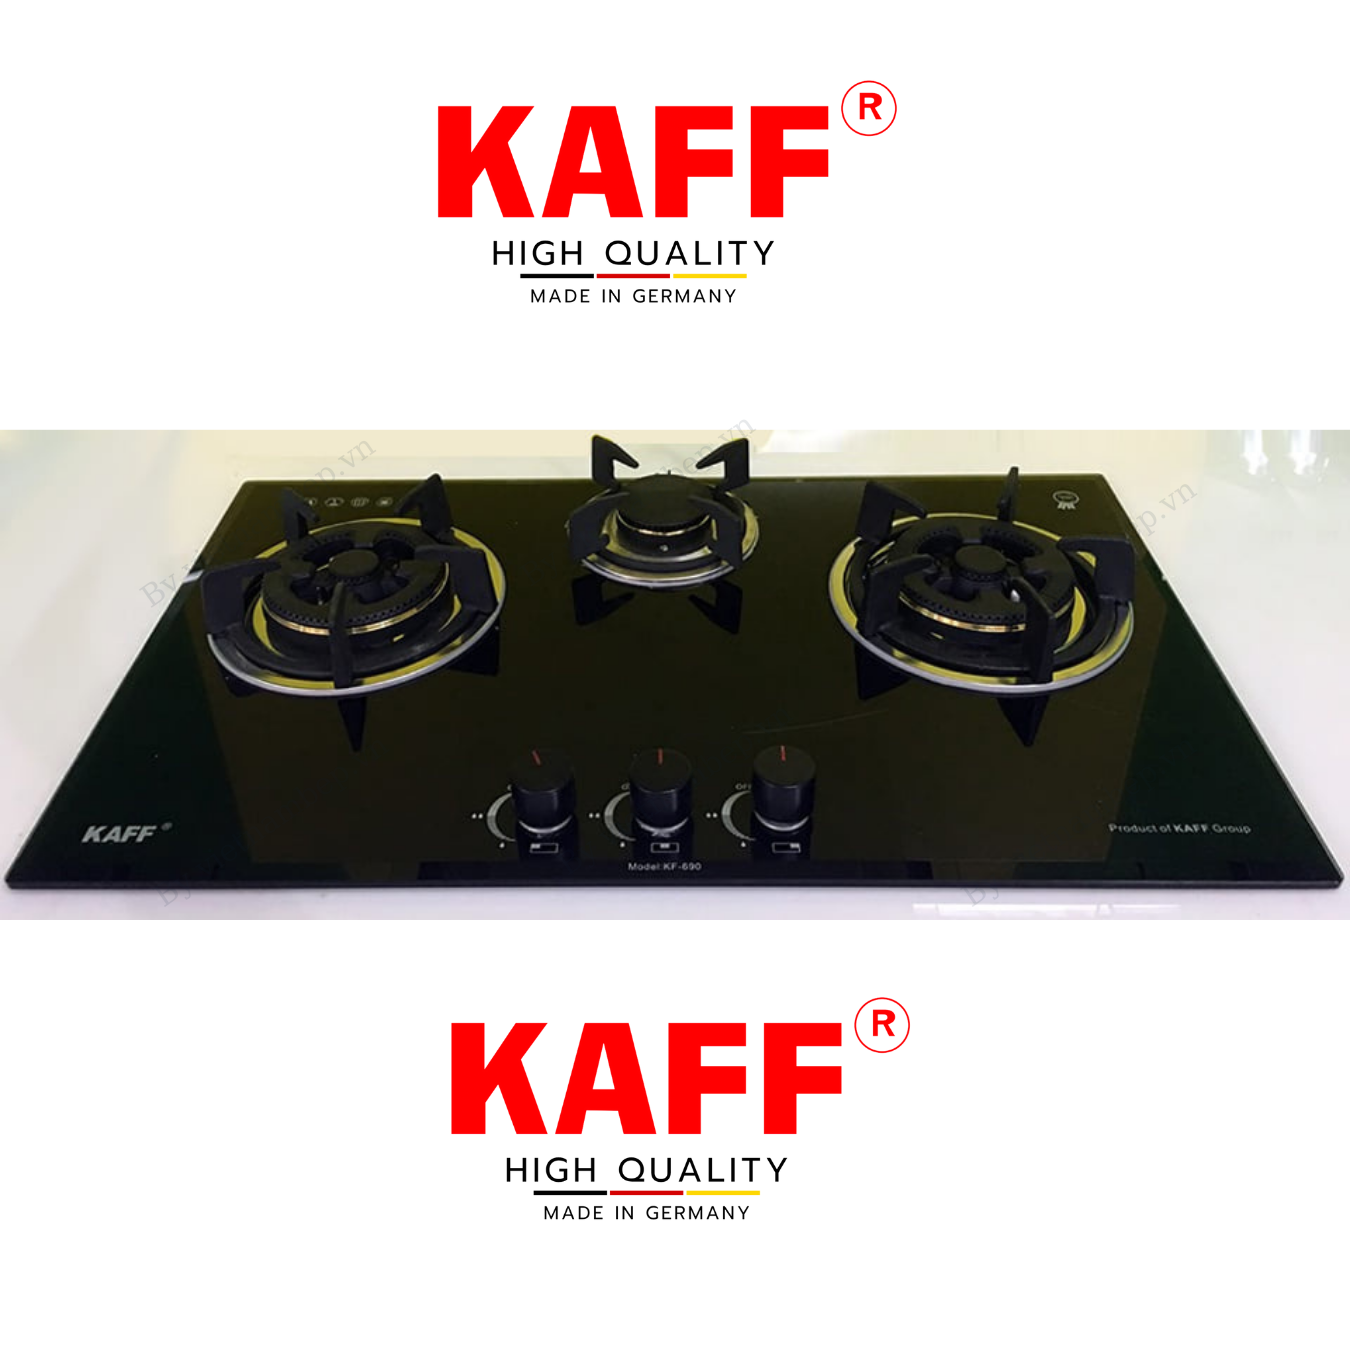 Bộ Bếp ga âm 3 lò KAFF KF- 690 bao gồm: Bếp ga + chảo chống dính cao cấp + bộ van ga - Hàng chính hãng